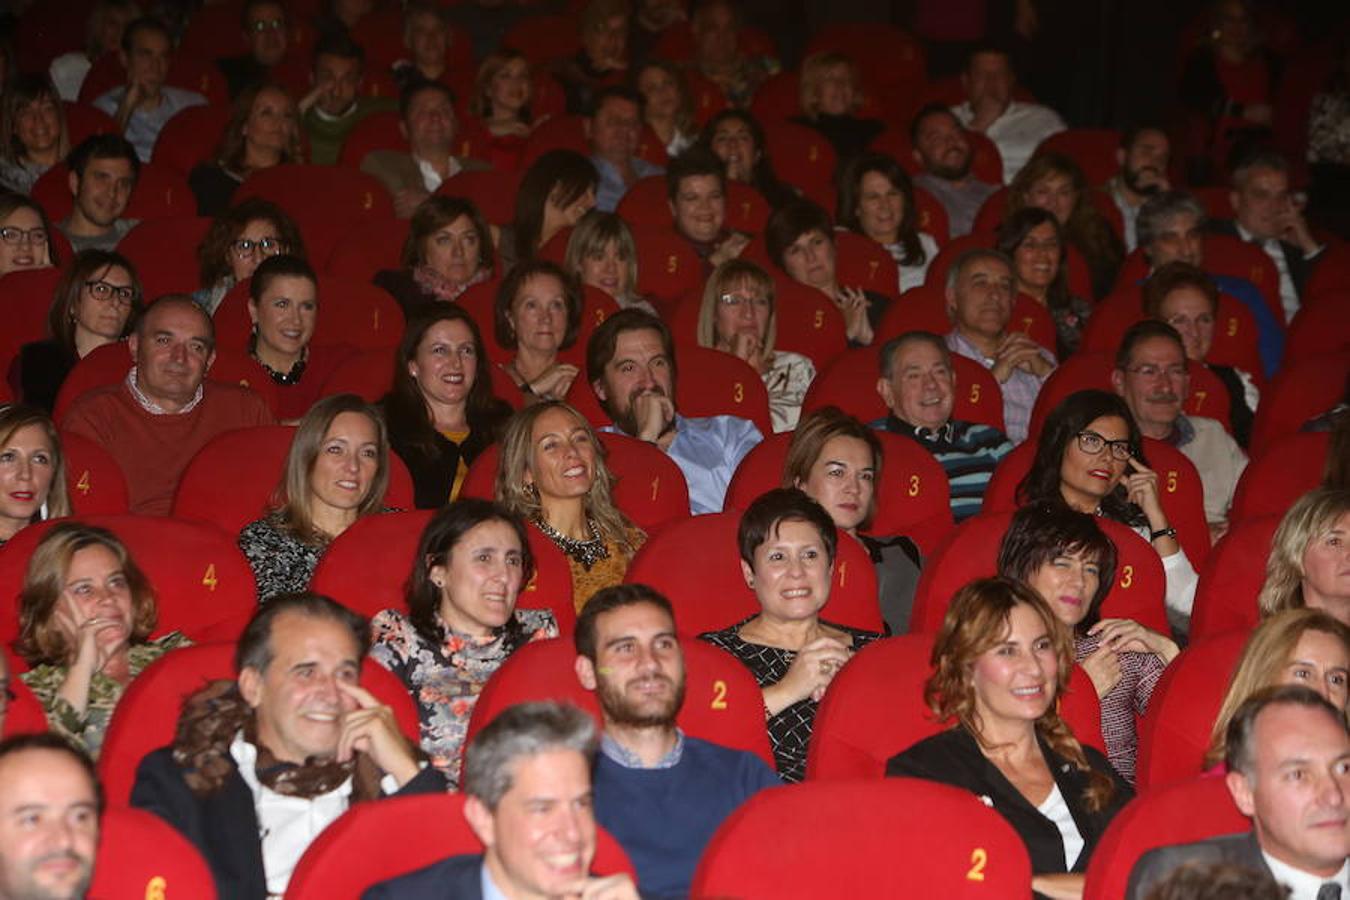 Los cines Siete Infantes acogieron la gala de entrega de Galardones TVR a Paula Vázquez, Alenajdra Andrade y José Ribagorda